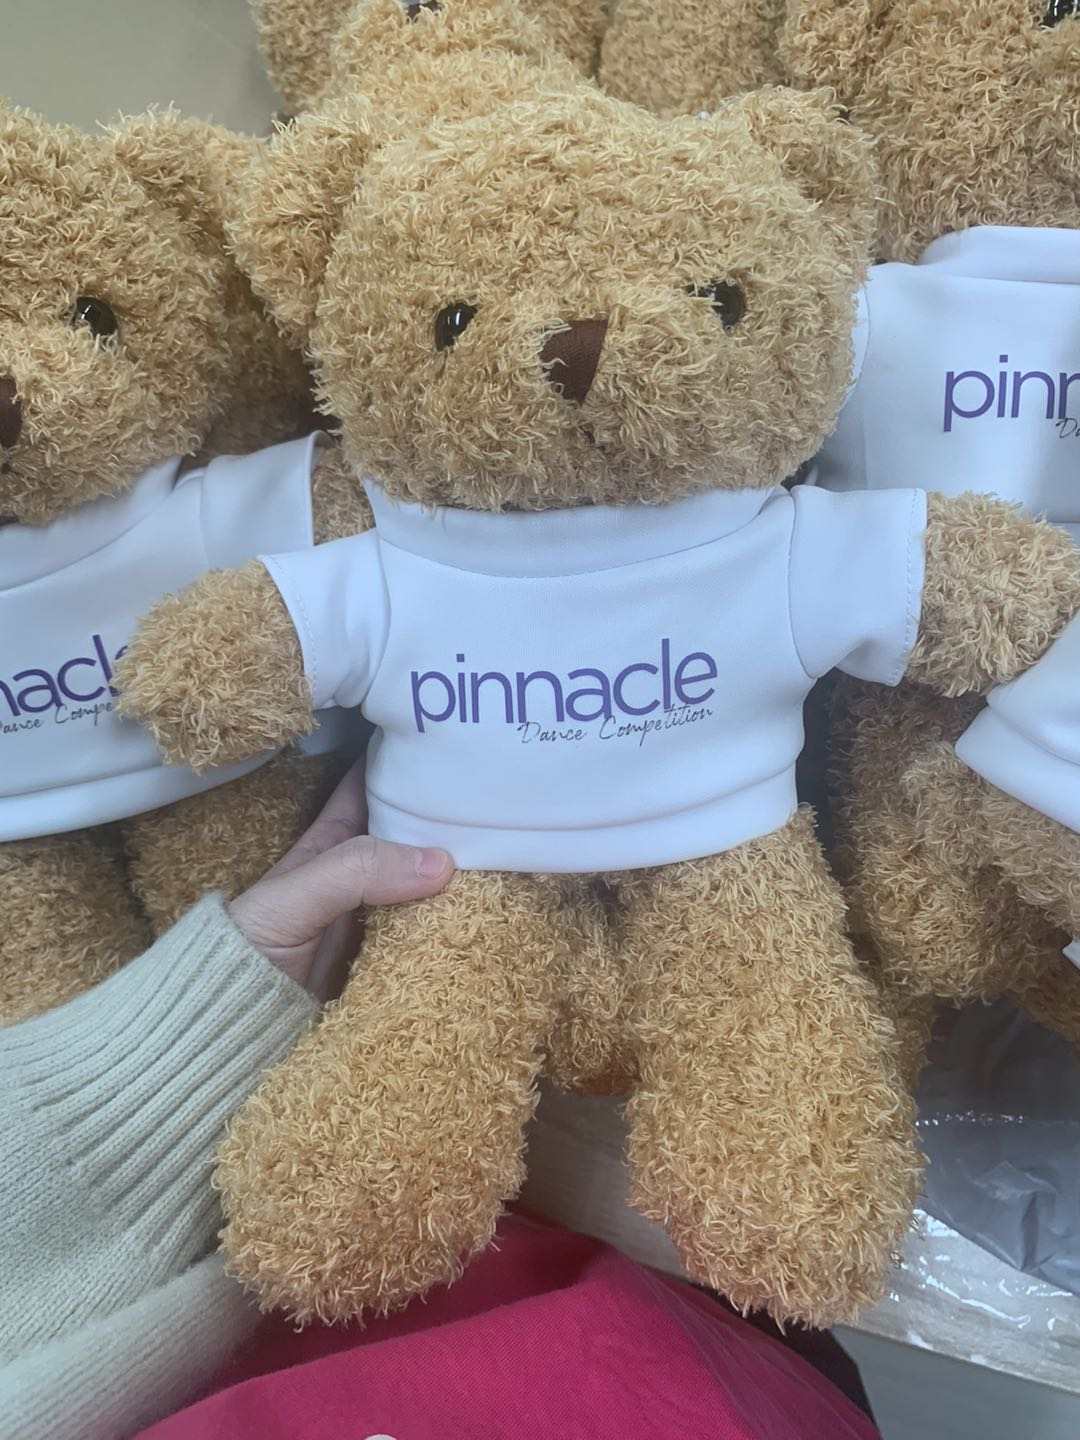 Pinnacle Teddy Bear Plushie